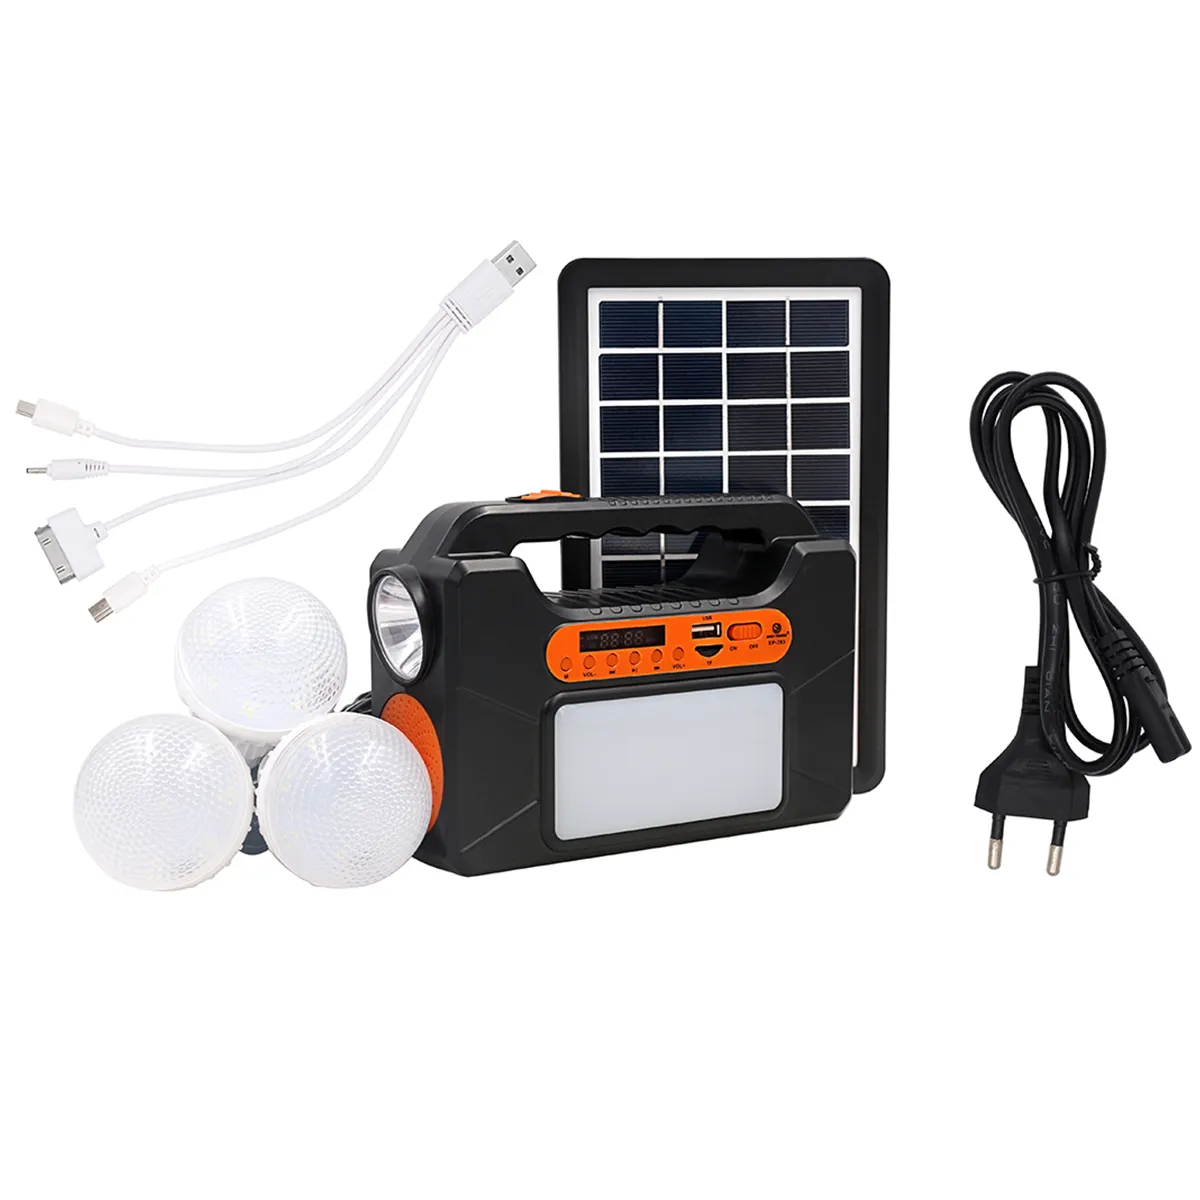 Mini système d'éclairage solaire, haut-parleur Portable et Led, système d'urgence, chargement Mobile